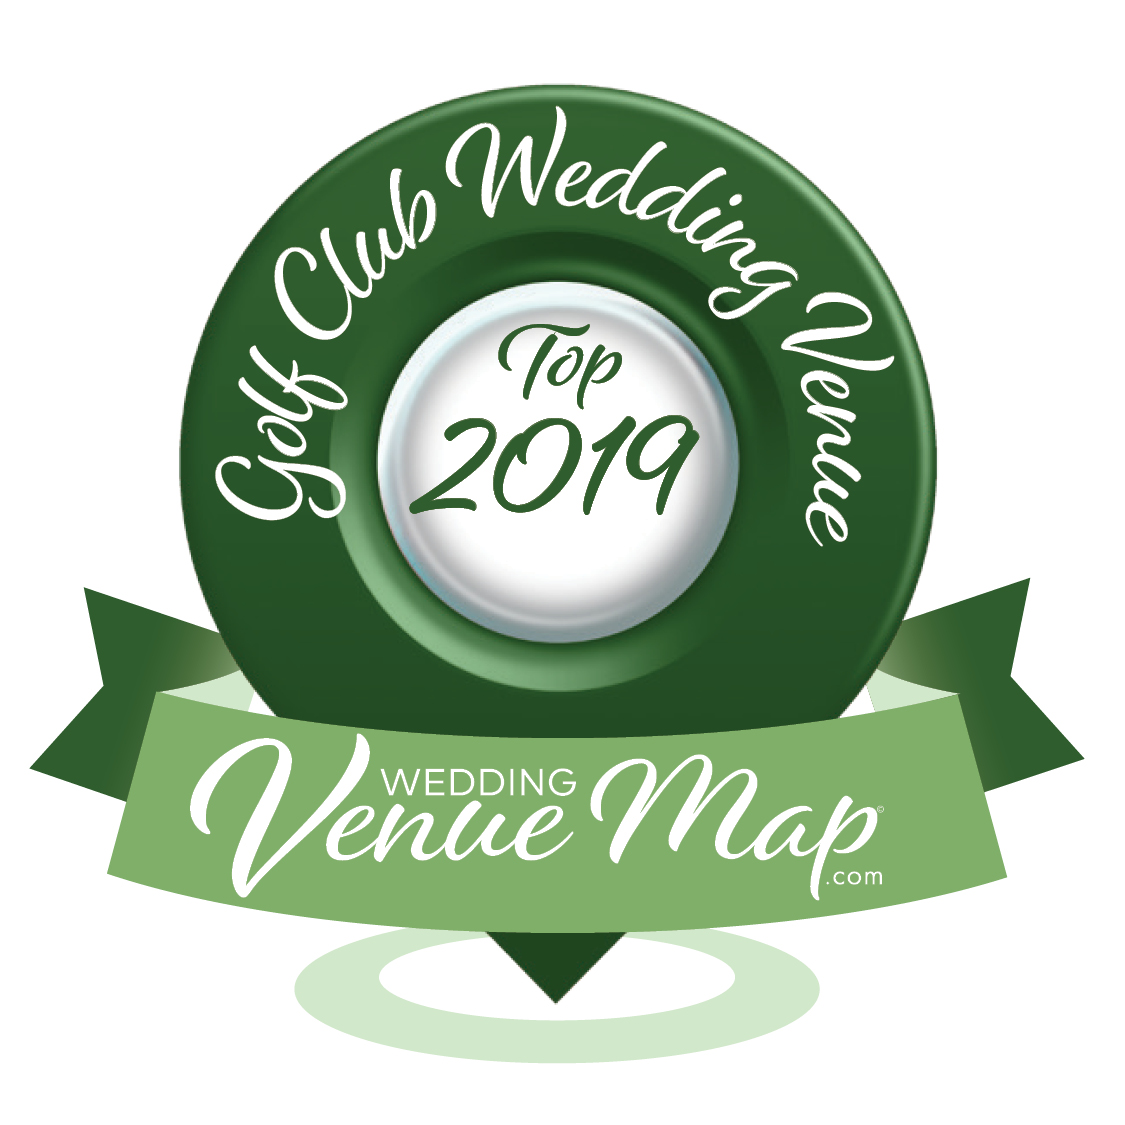 2019 Top Golf Club Wedding Venue Award